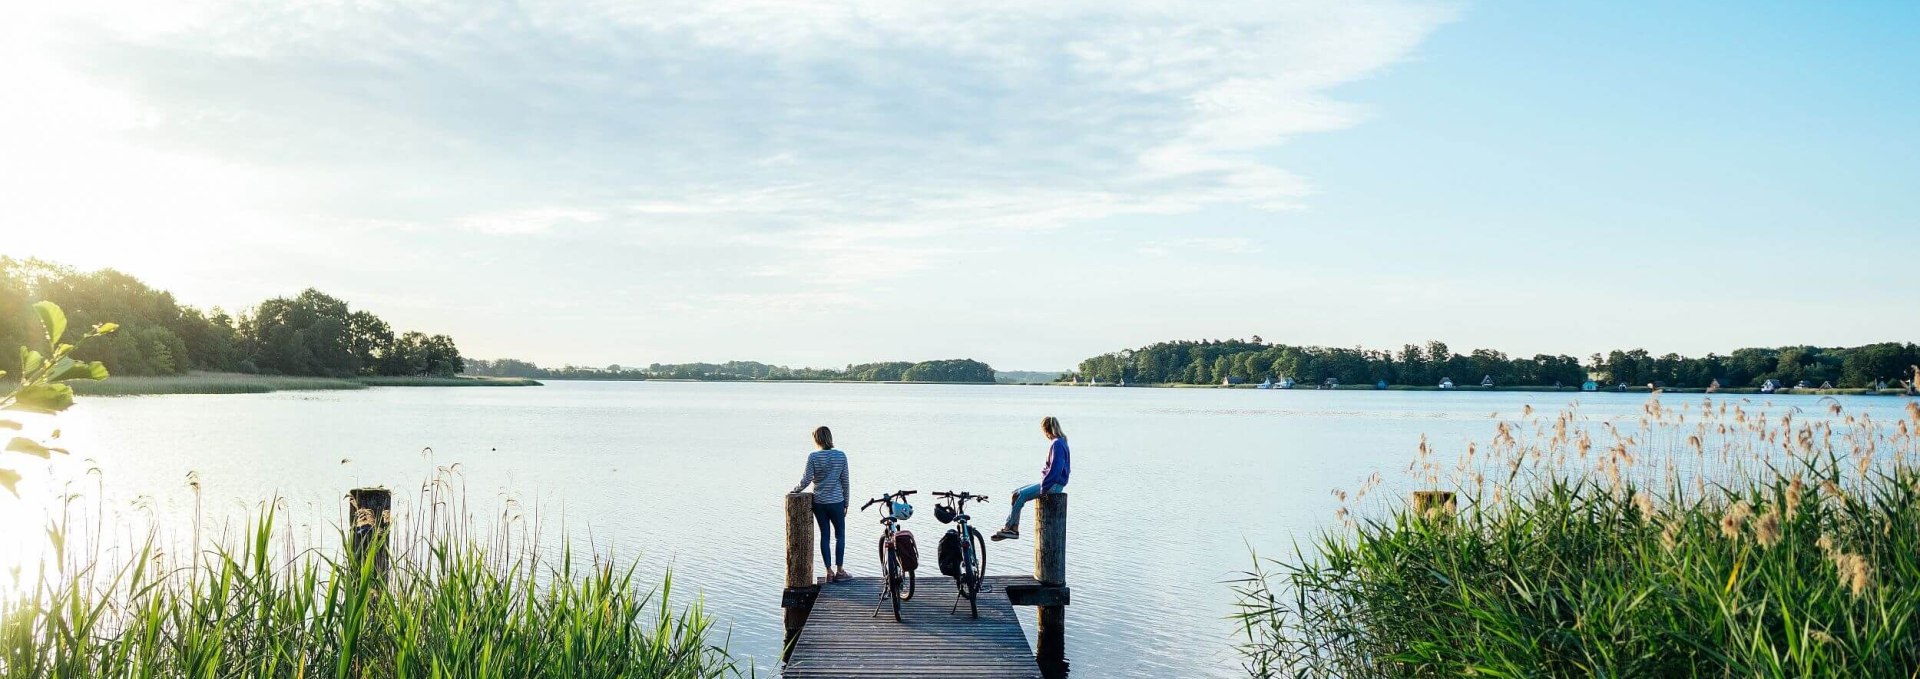 Natur genießen in Krakow am See mit Blick aufs Wasser, © TMV/Gänsicke